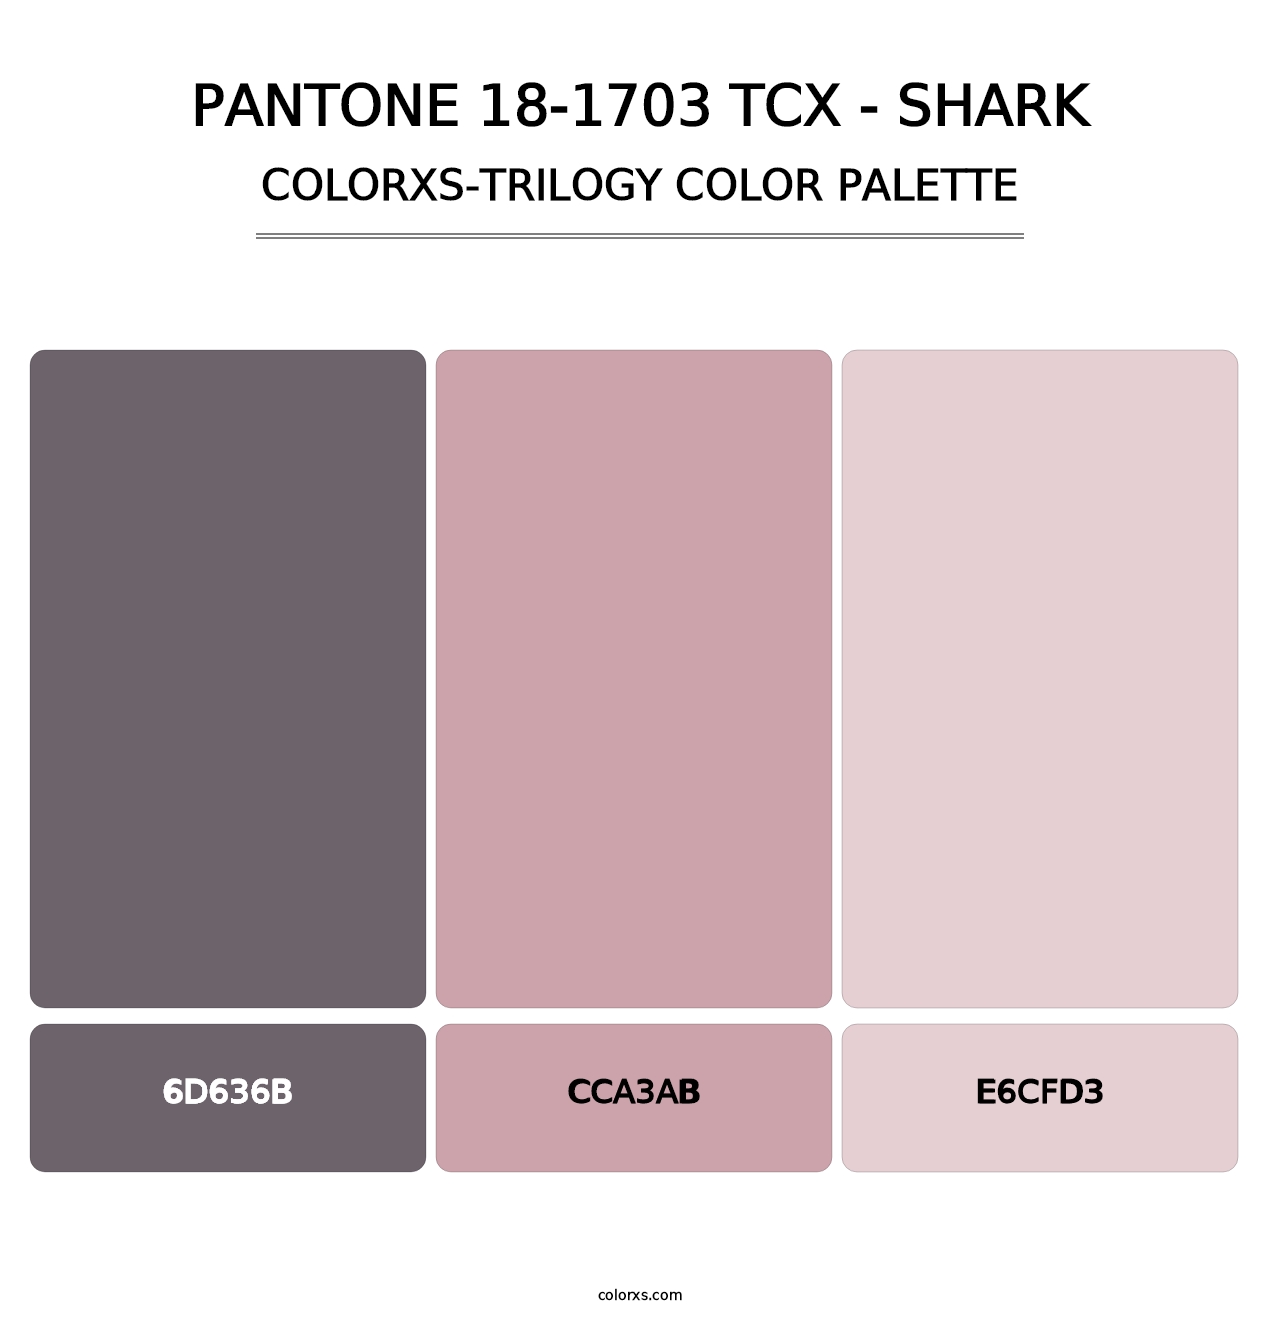 PANTONE 18-1703 TCX - Shark - Colorxs Trilogy Palette